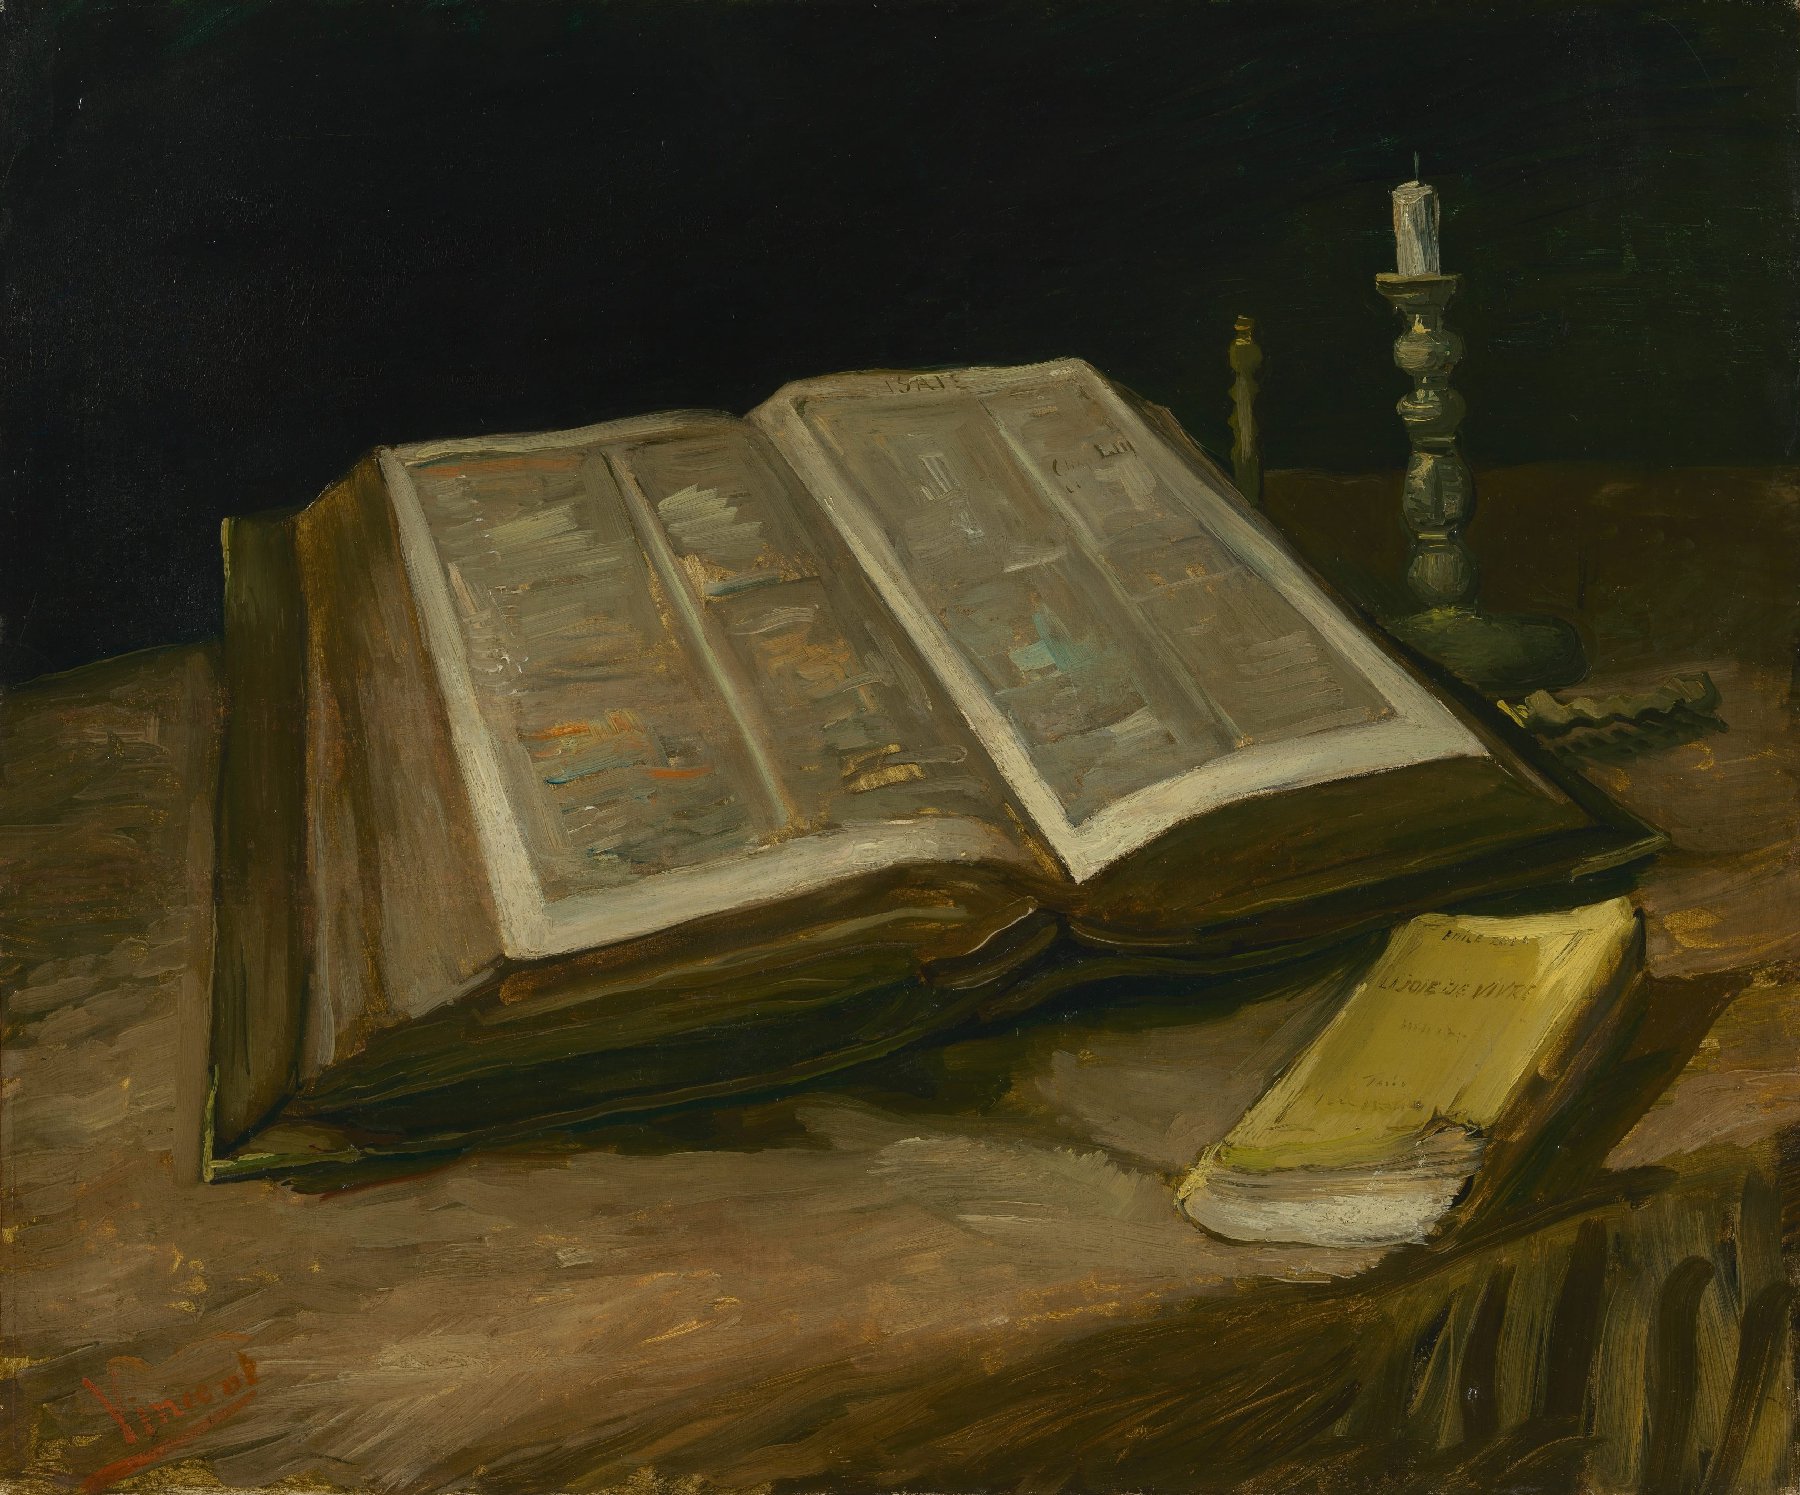 Stilleven met bijbel Vincent van Gogh (1853 - 1890), Nuenen, oktober 1885